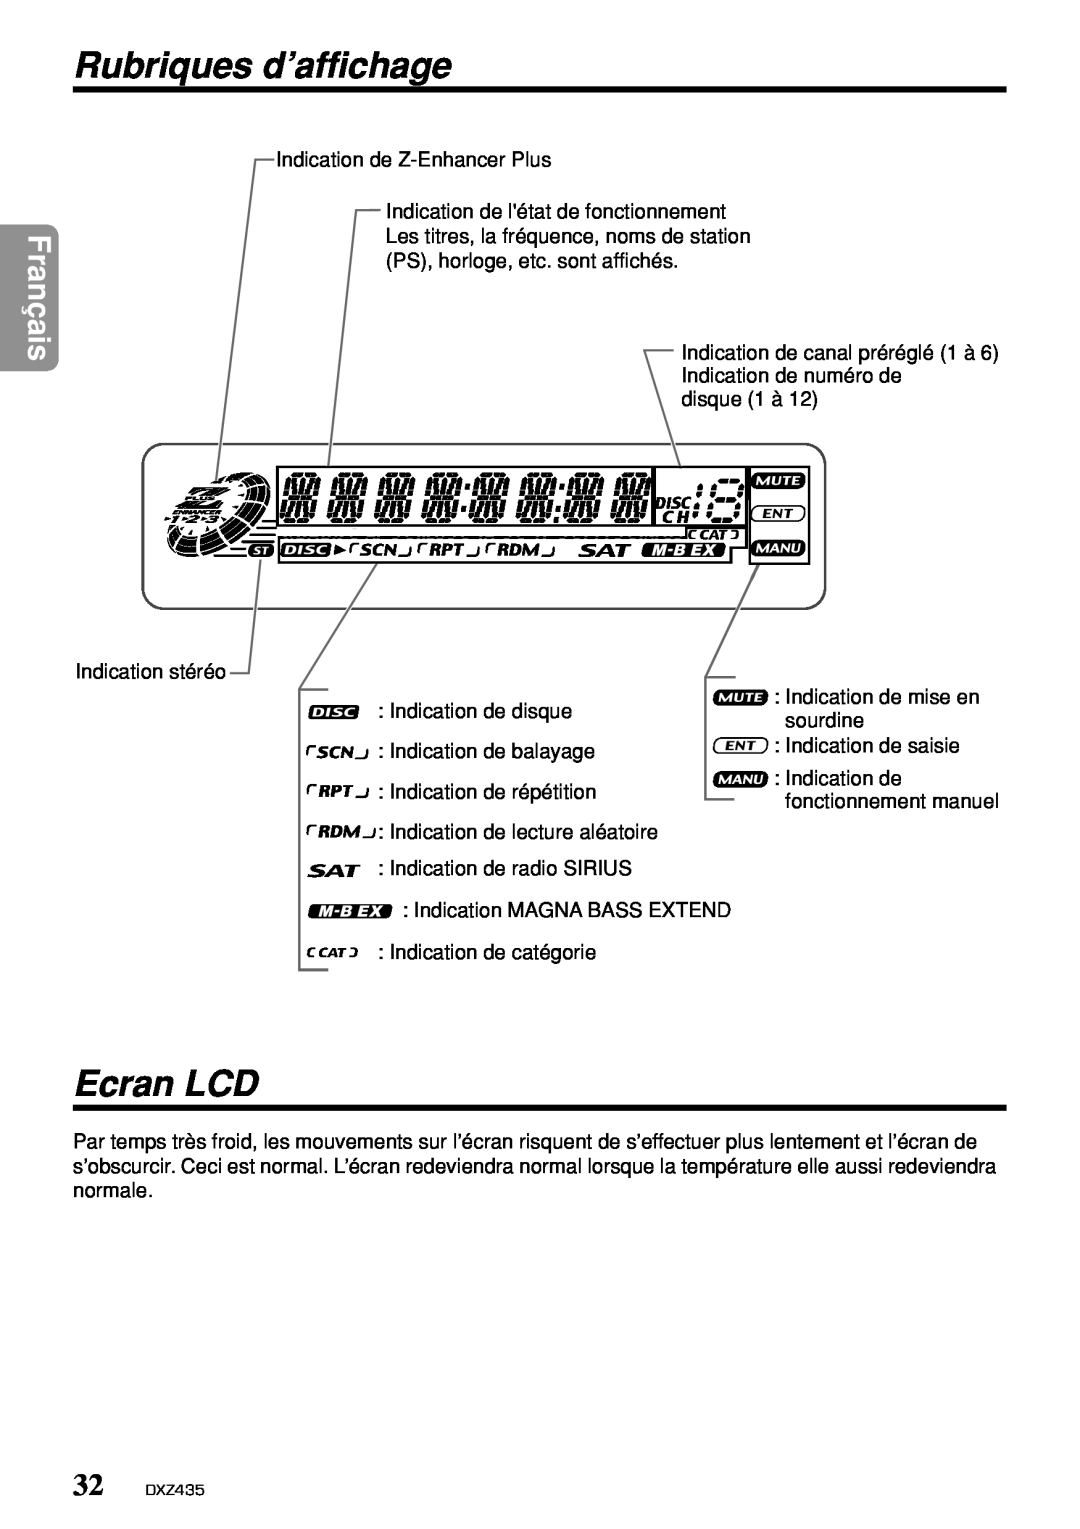 Clarion DXZ435 owner manual Rubriques d’affichage, Ecran LCD, Français 